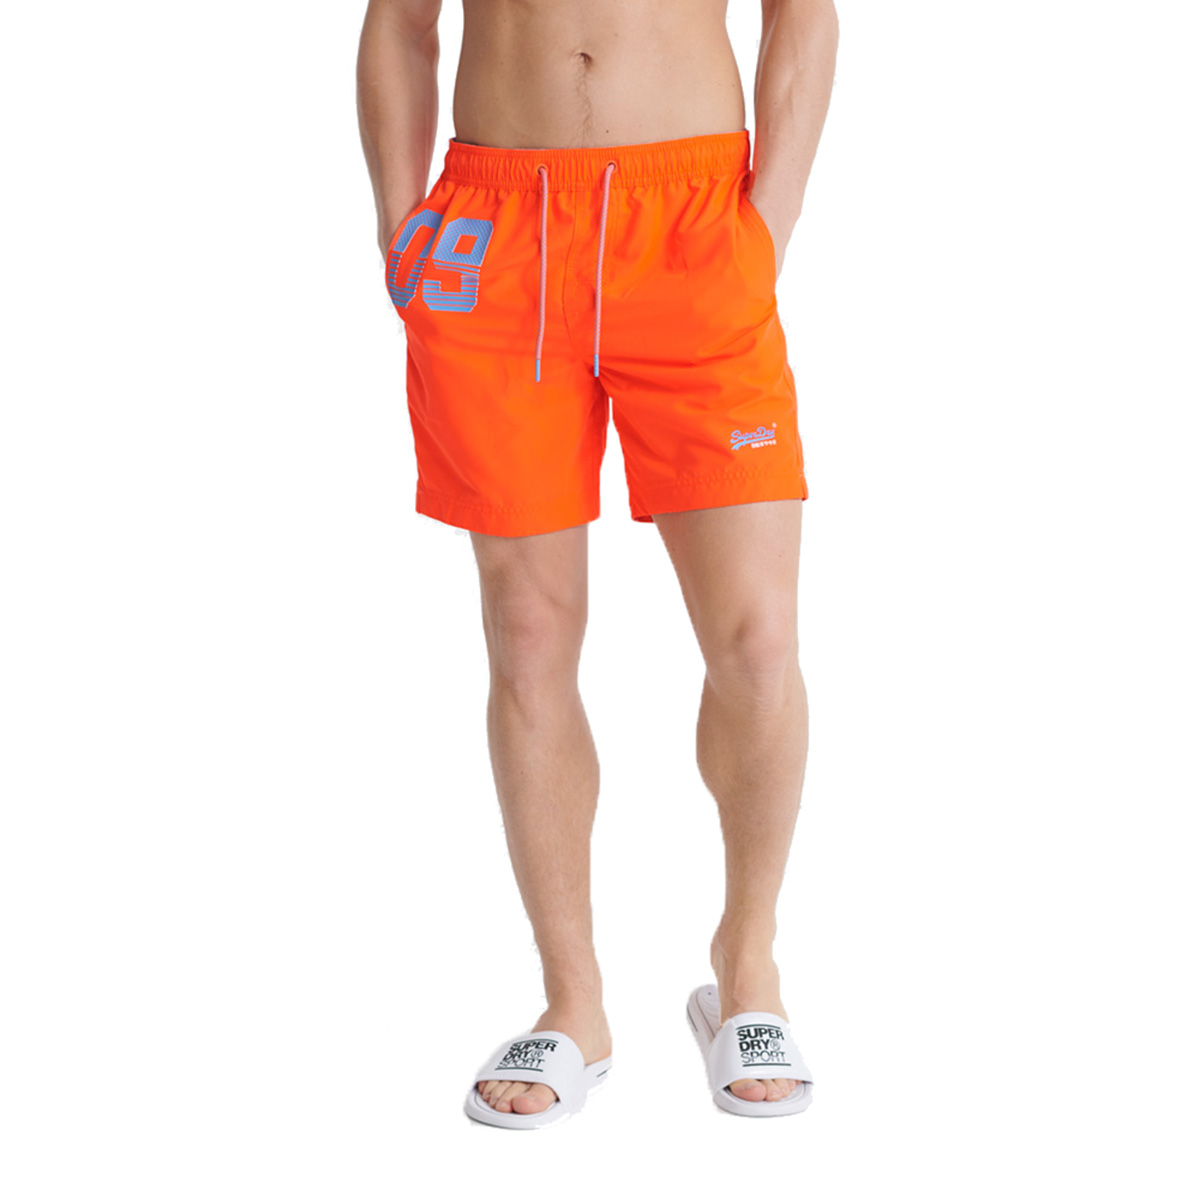 Superdry Herren Waterpolo Swim Short Schwimmhose Badeshorts M3010018A orange